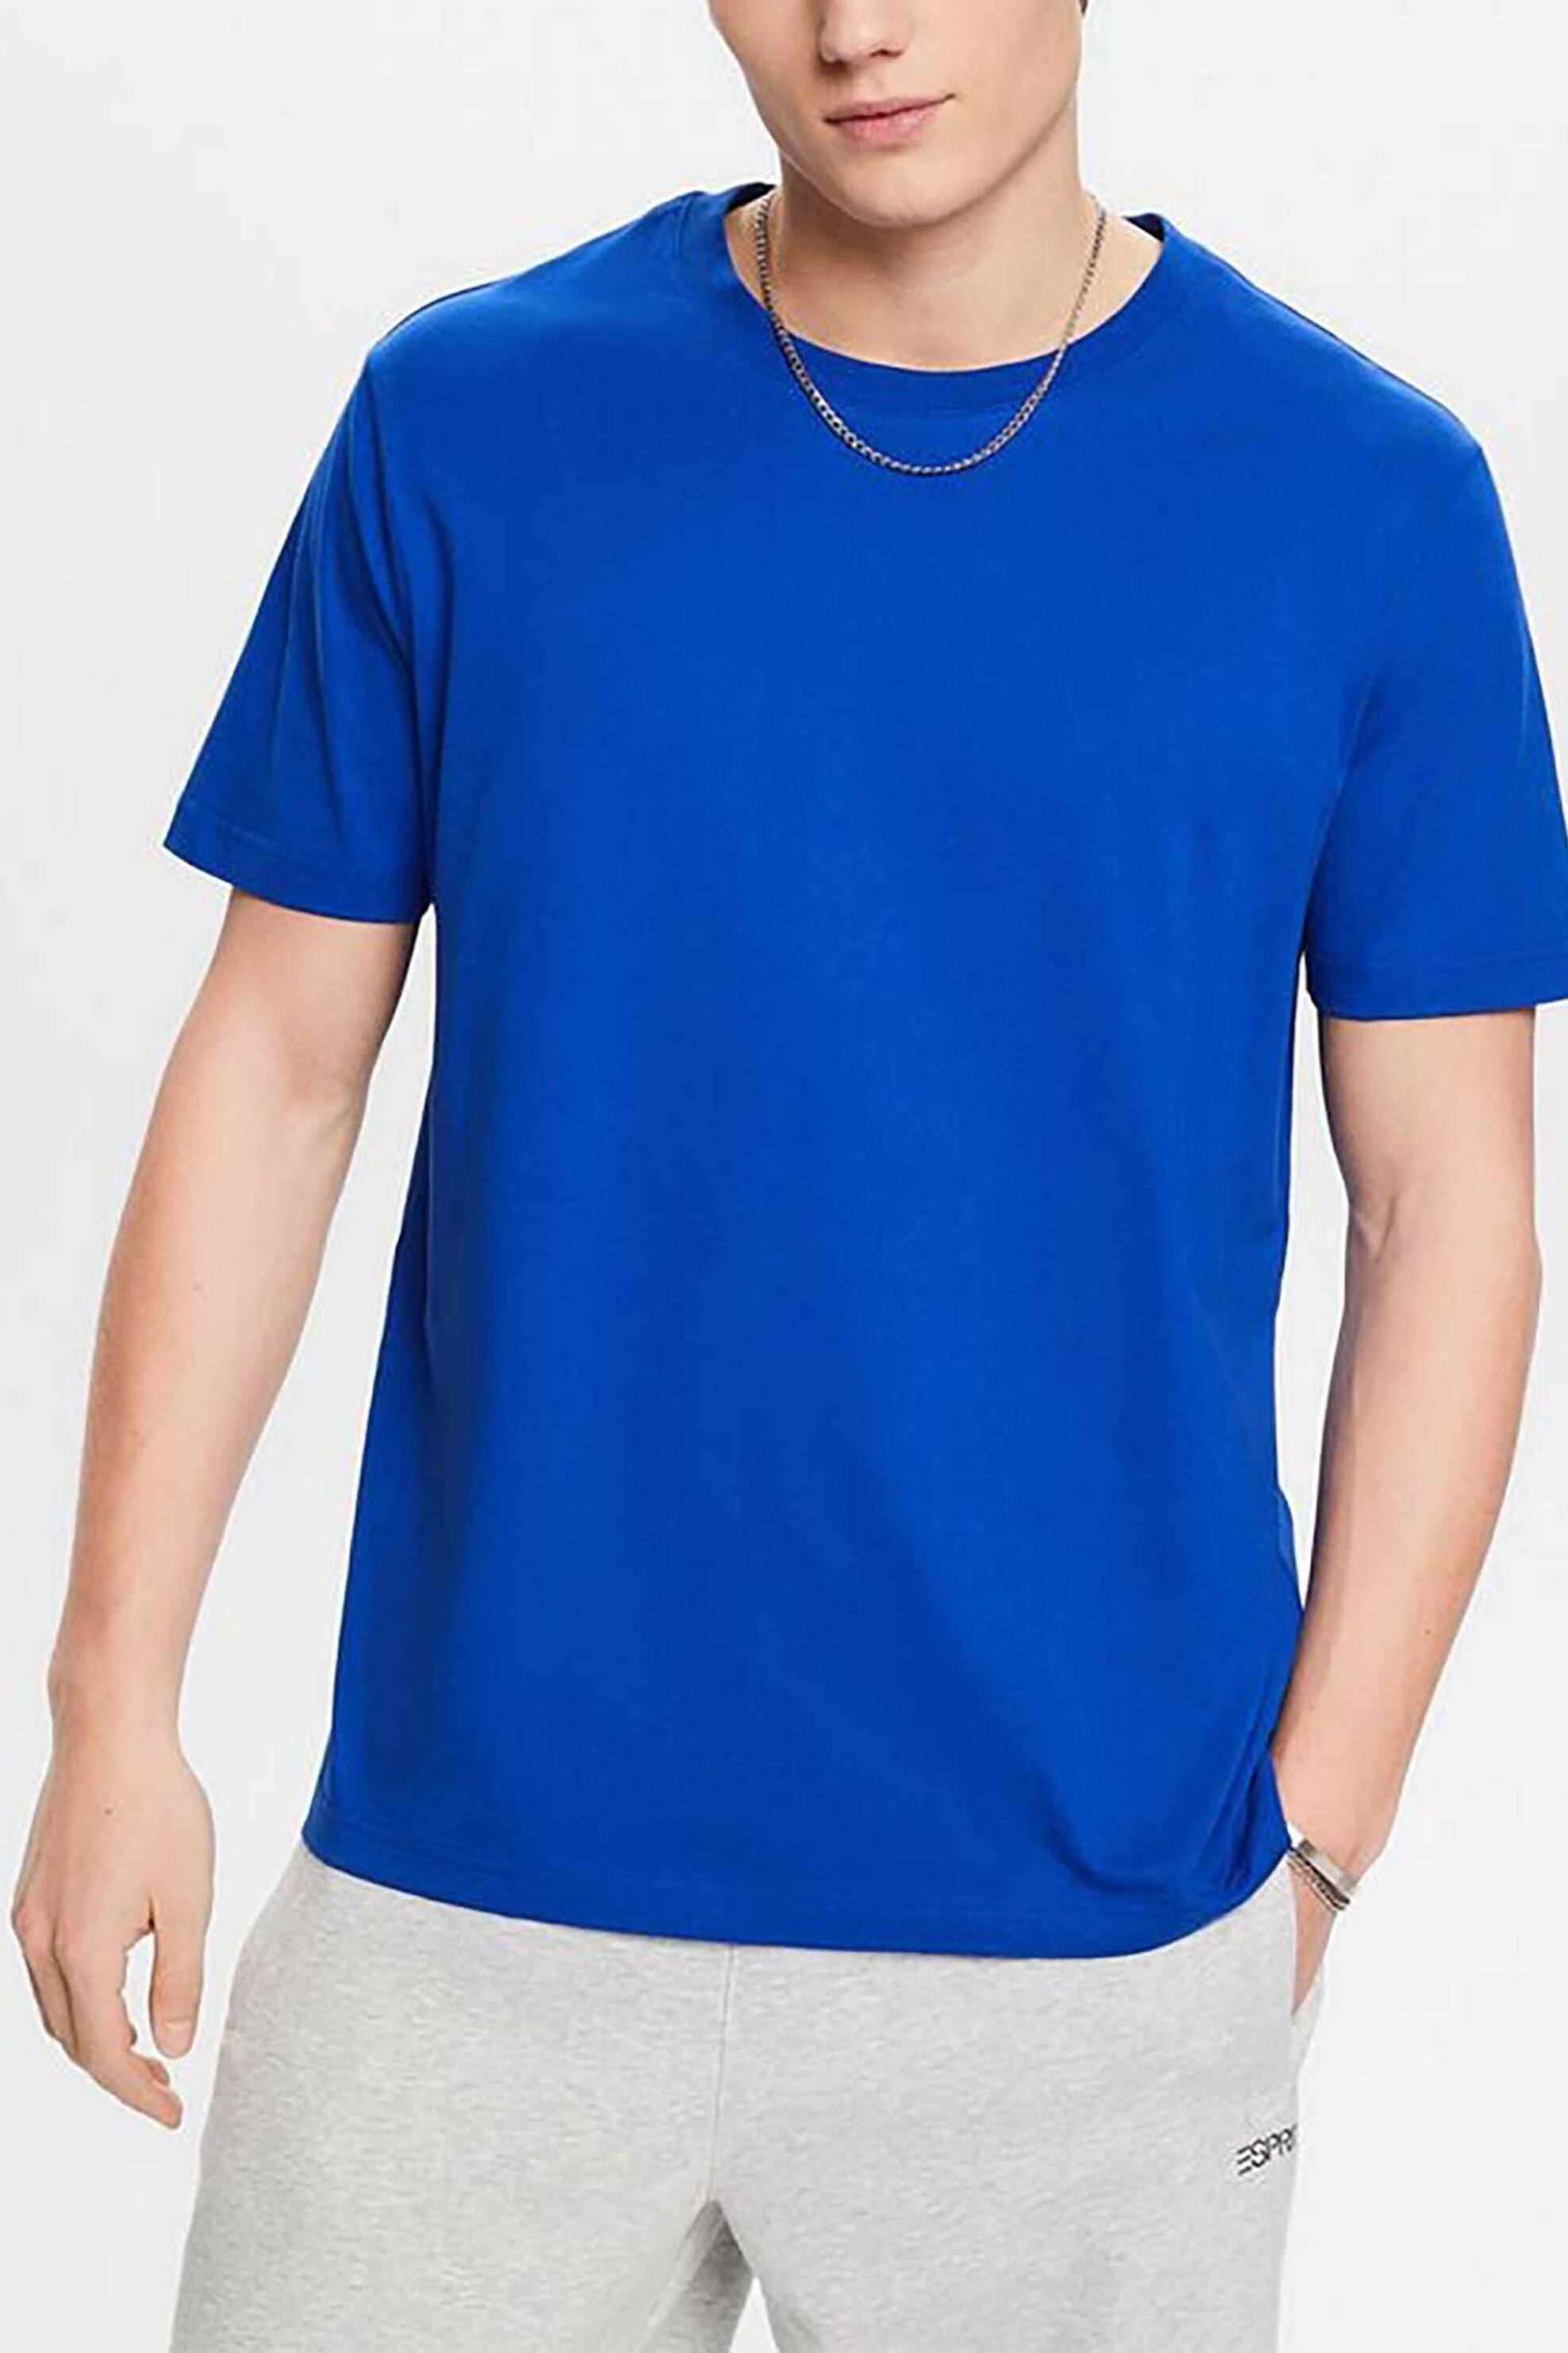 Ανδρική Μόδα > Ανδρικά Ρούχα > Ανδρικές Μπλούζες > Ανδρικά T-Shirts Esprit ανδρικό T-shirt μονόχρωμο Regular Fit - 993EE2K307 Μπλε